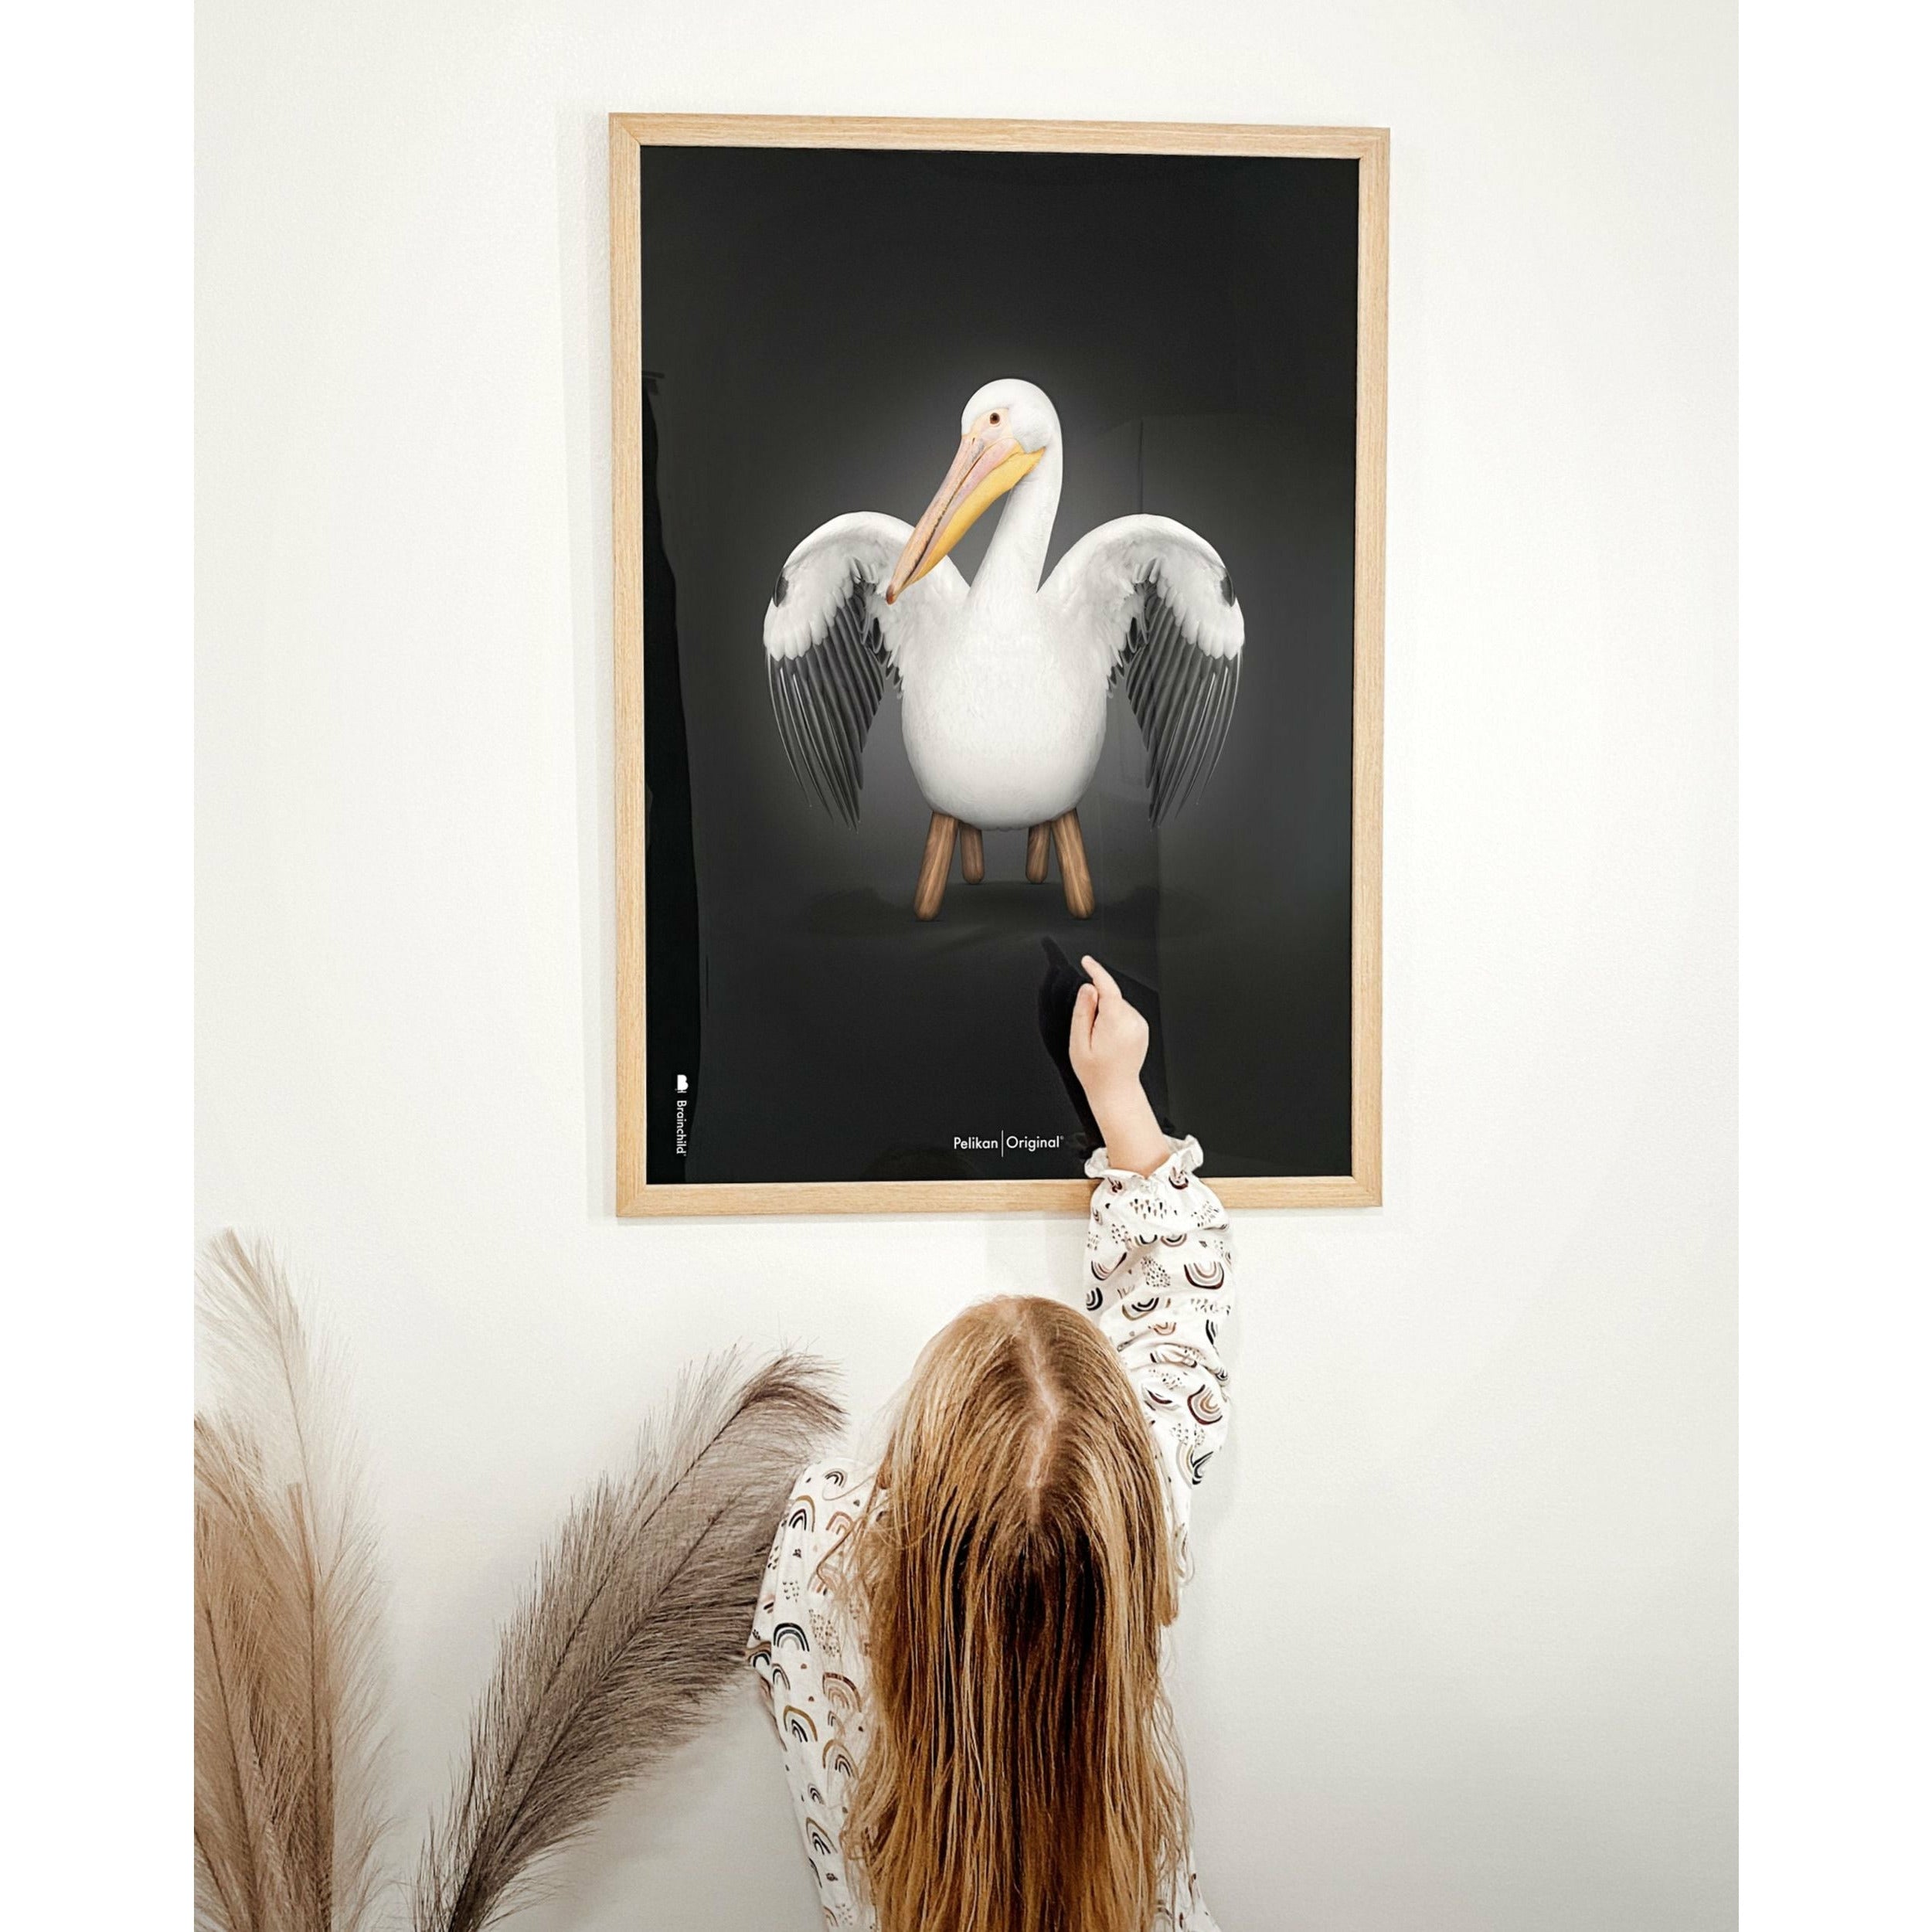 Poster classico di Pelikan da un'idea, cornice in legno chiaro 70x100 cm, sfondo nero